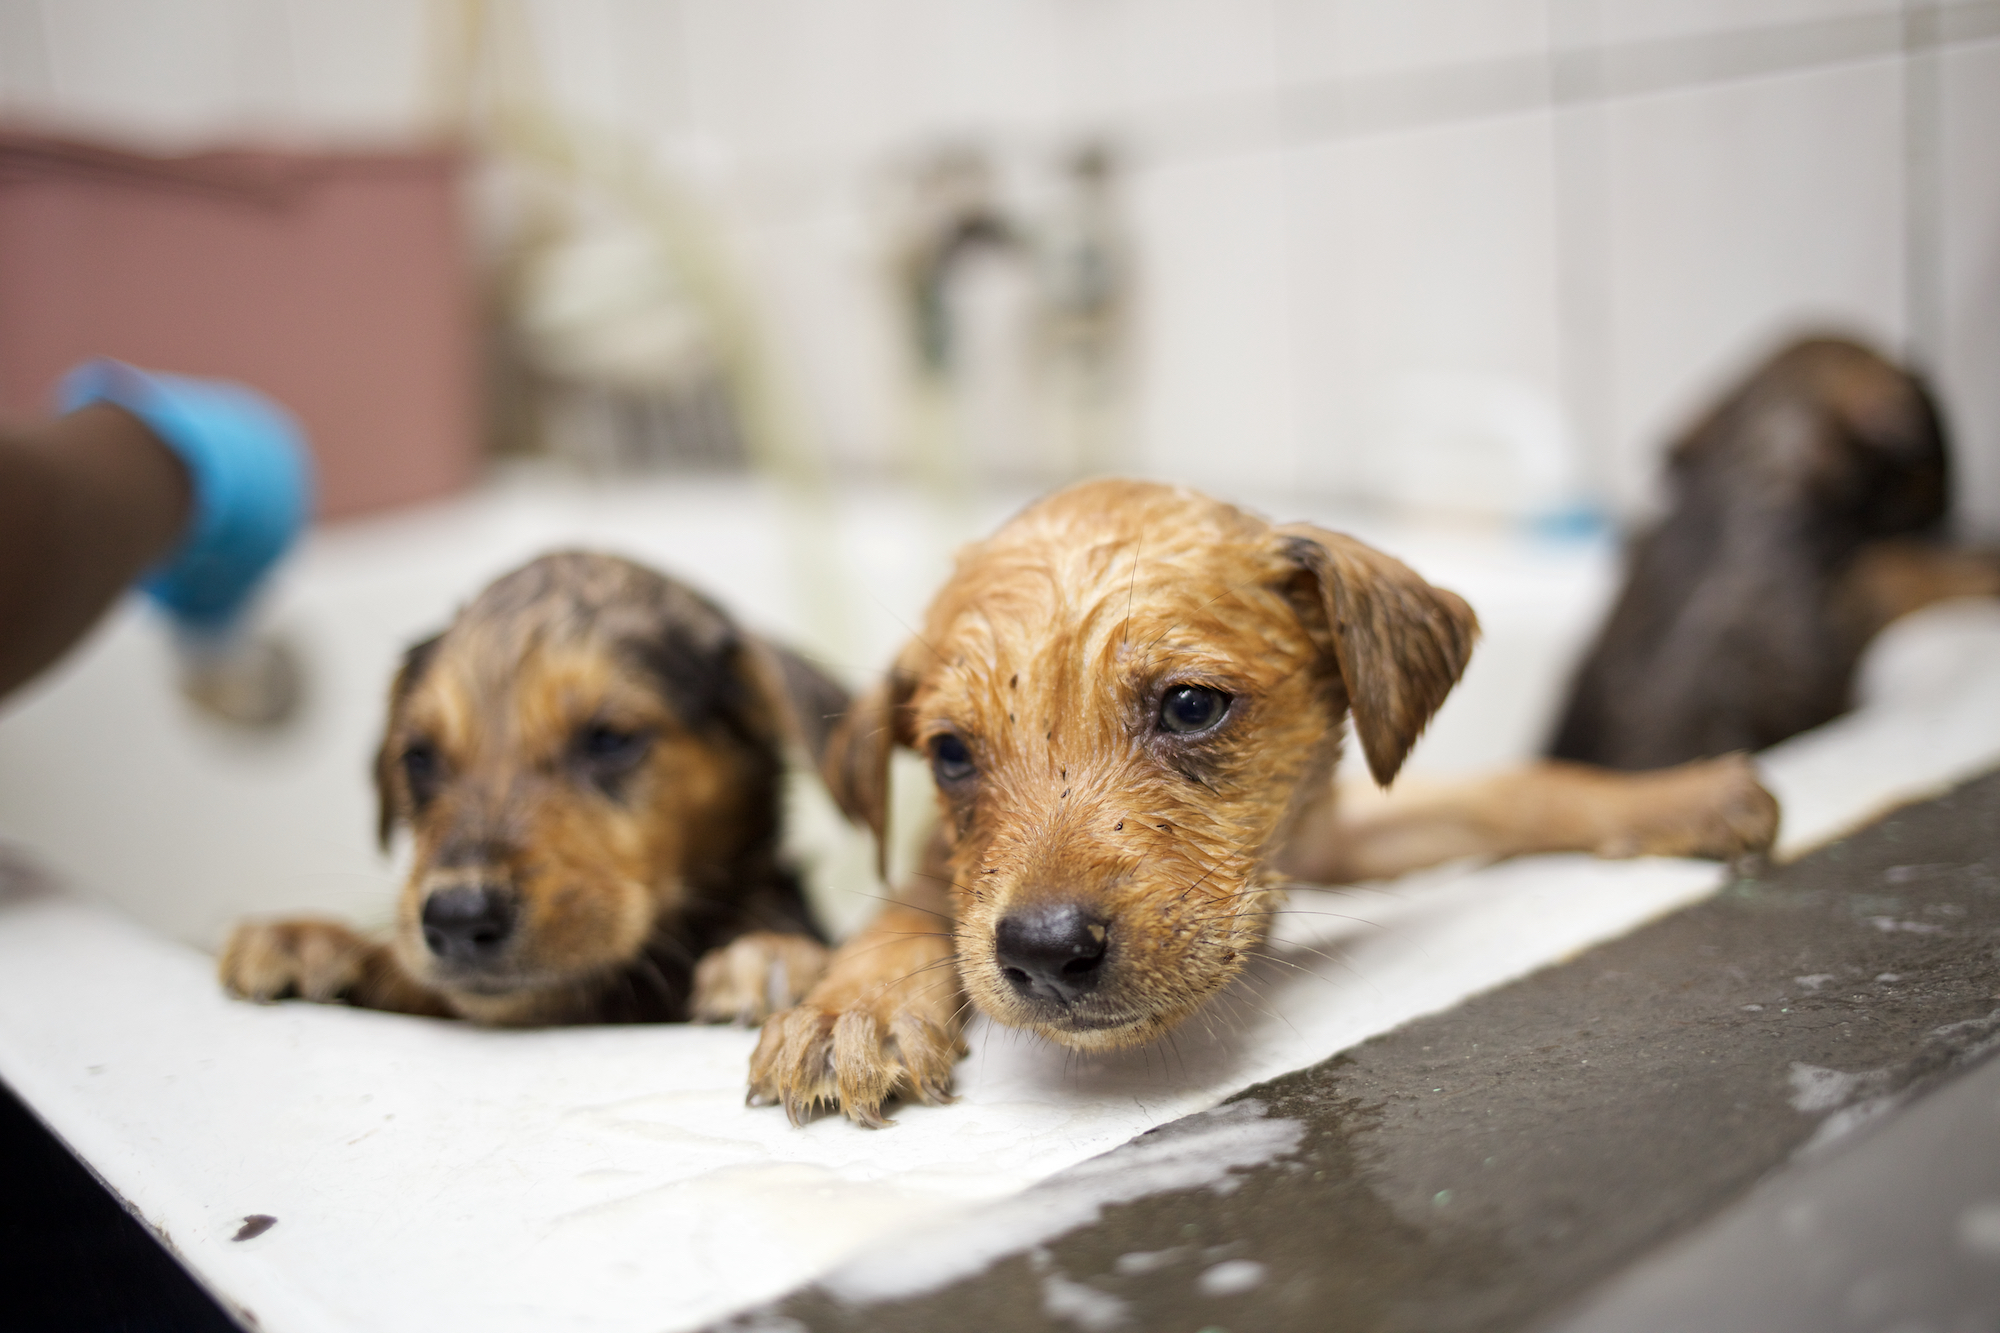 Puppies getting a bath